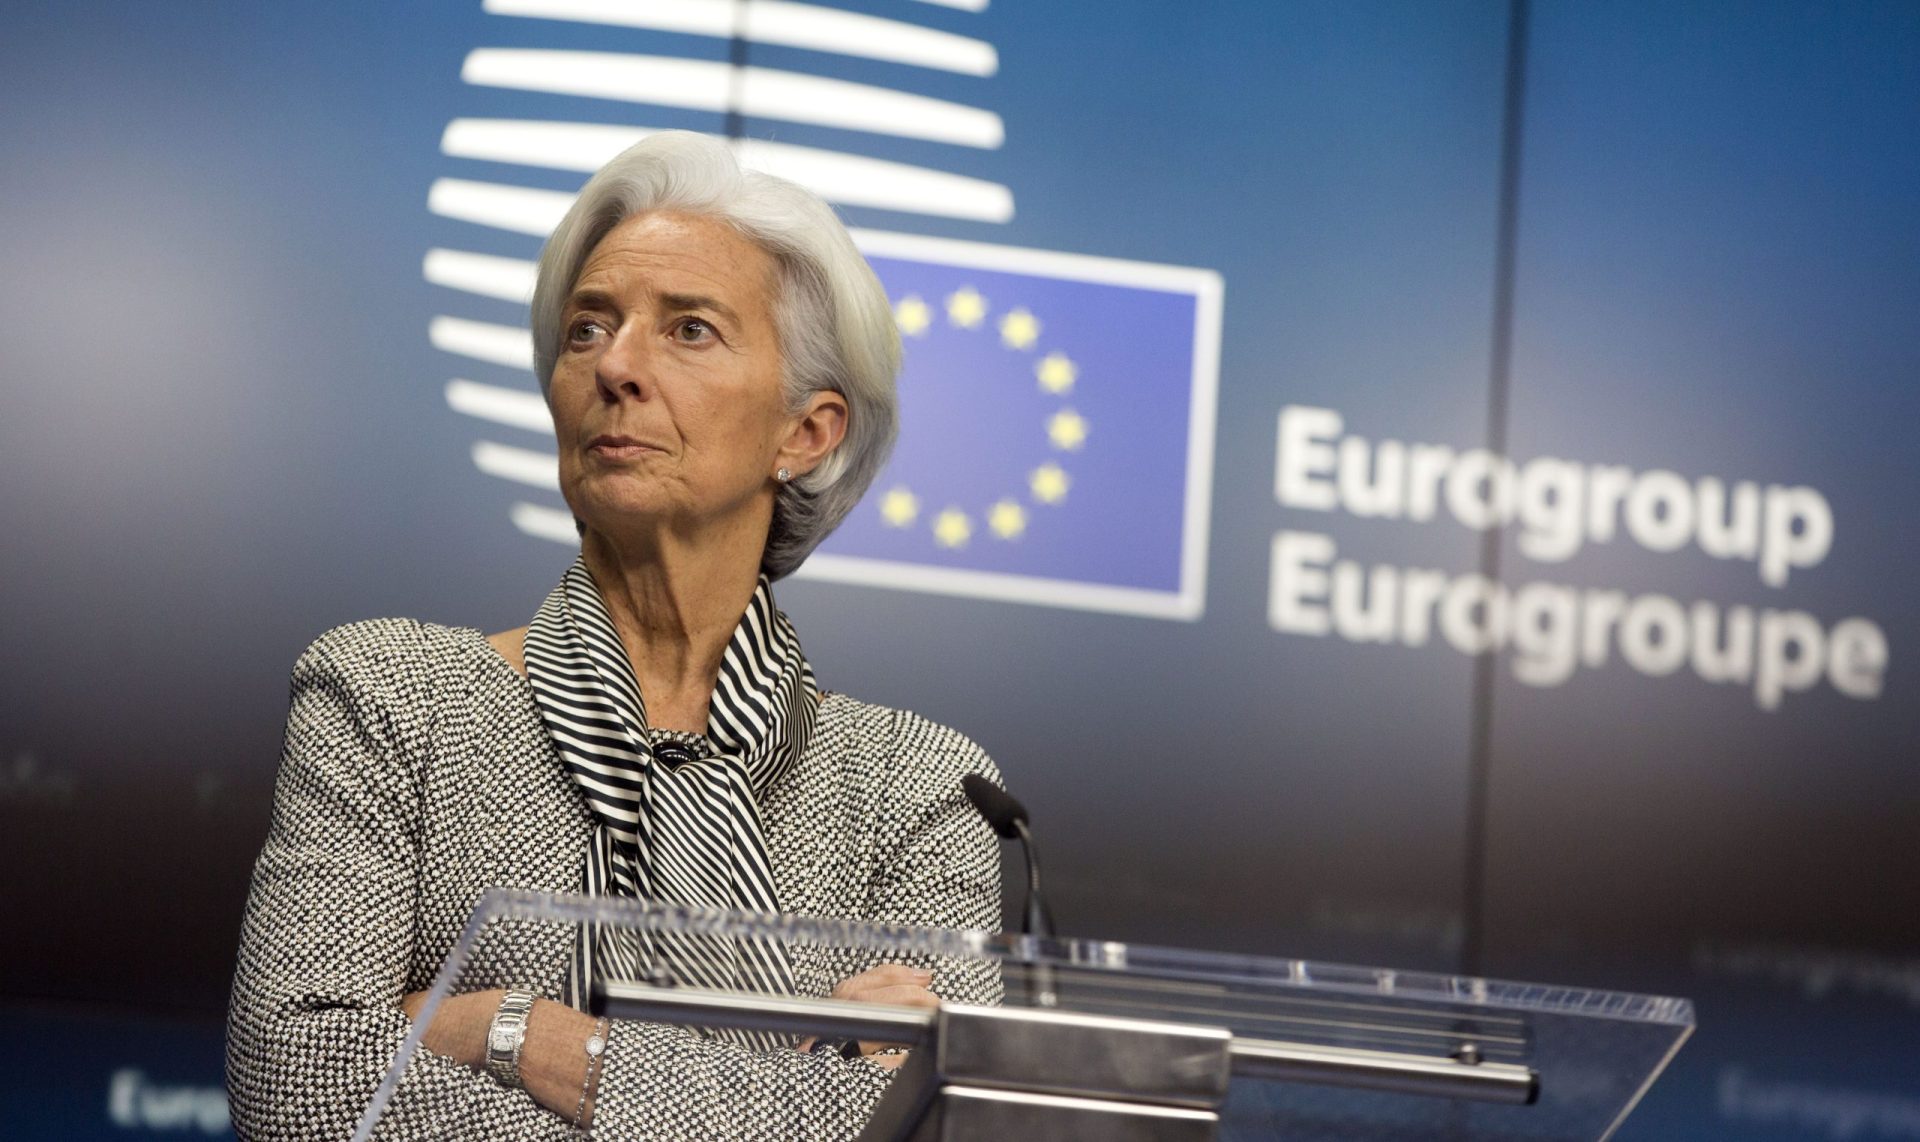 Lagarde garante que BCE “está ciente” do “sofrimento” causado pelo aumento das taxas de juro